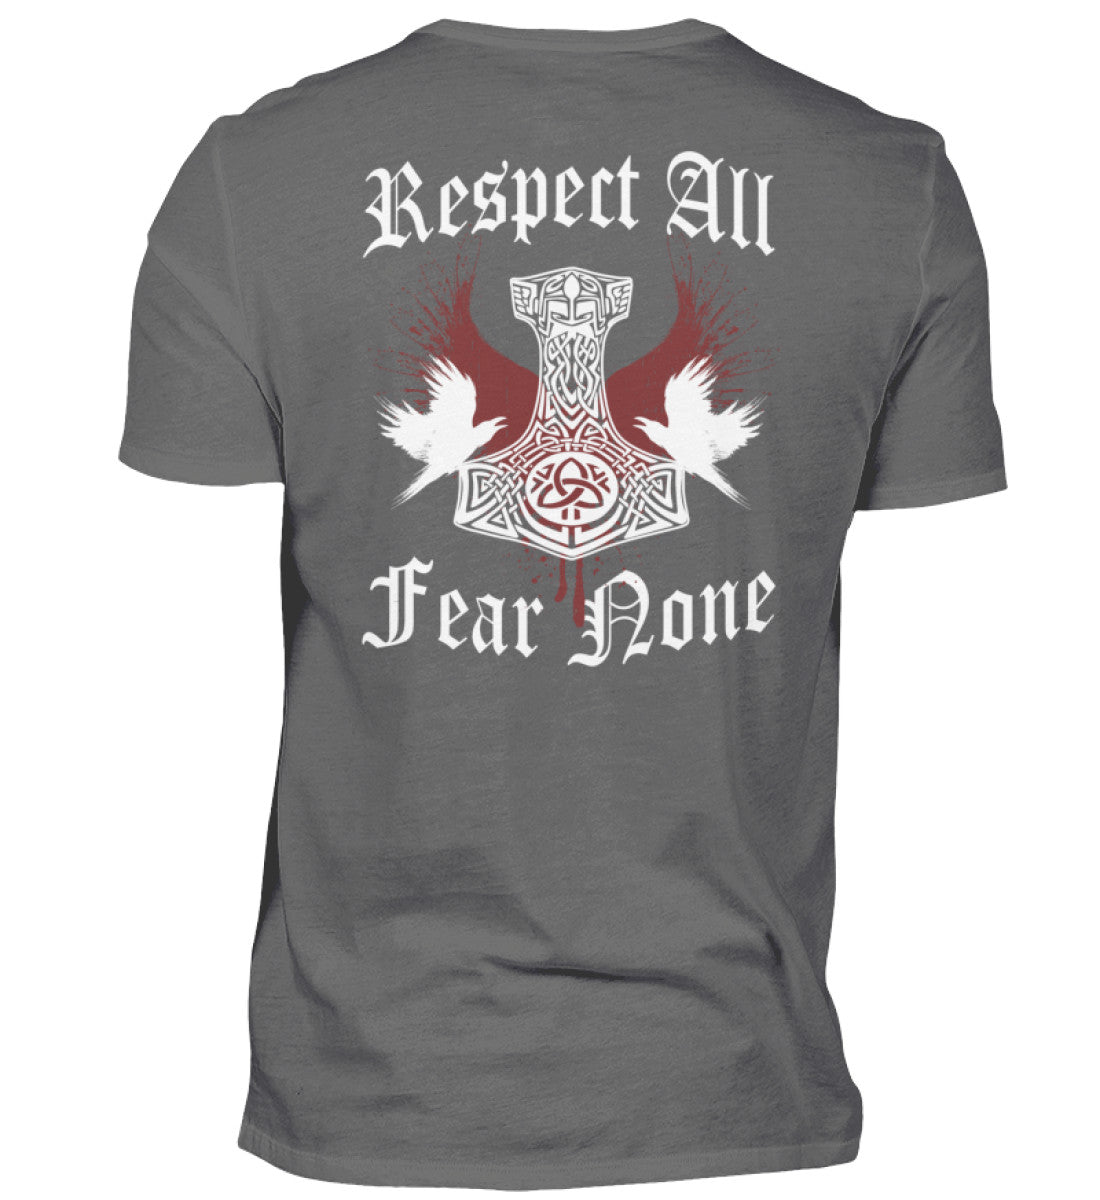 Ein T-Shirt für Motorradfahrer von Wingbikers mit dem Aufdruck, Respekt All - Fear None - mit einem Thorshammer, in grau.